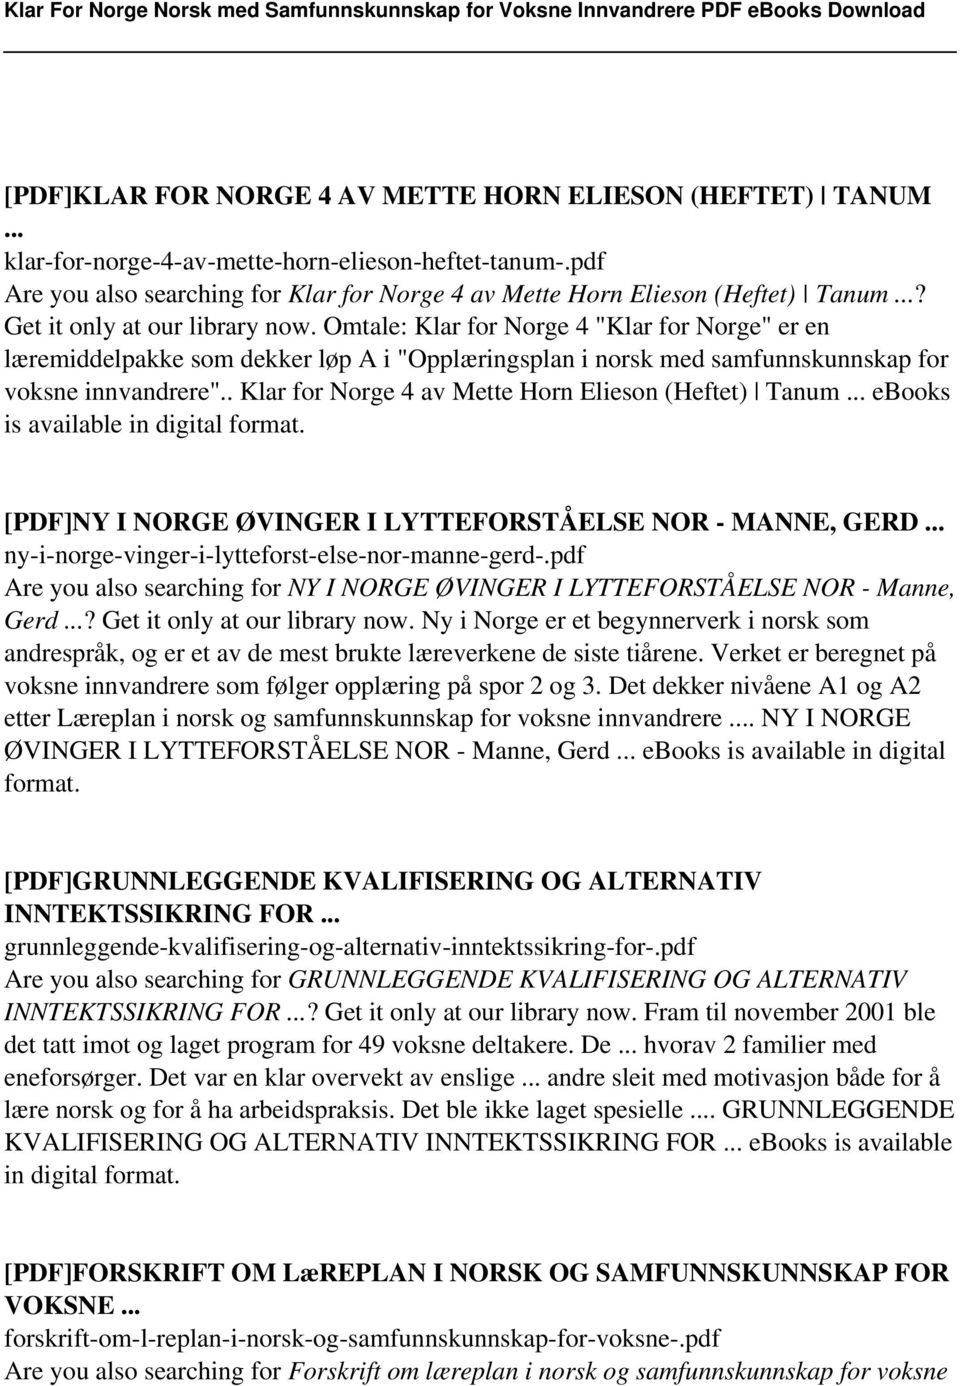 . Klar for Norge 4 av Mette Horn Elieson (Heftet) Tanum... ebooks is available in digital format. [PDF]NY I NORGE ØVINGER I LYTTEFORSTÅELSE NOR - MANNE, GERD.